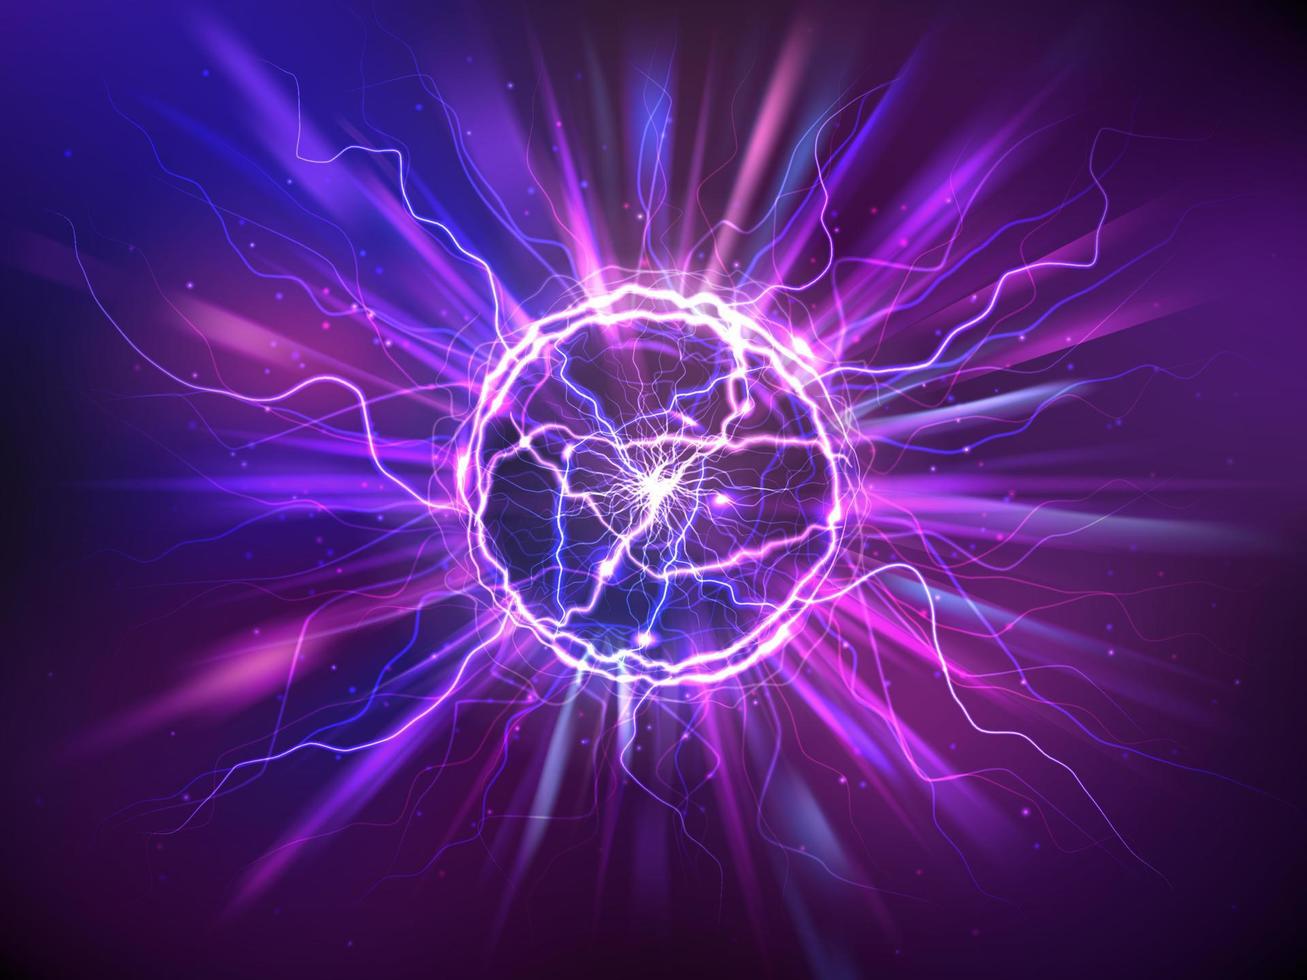 réaliste électrique Balle ou abstrait plasma sphère vecteur